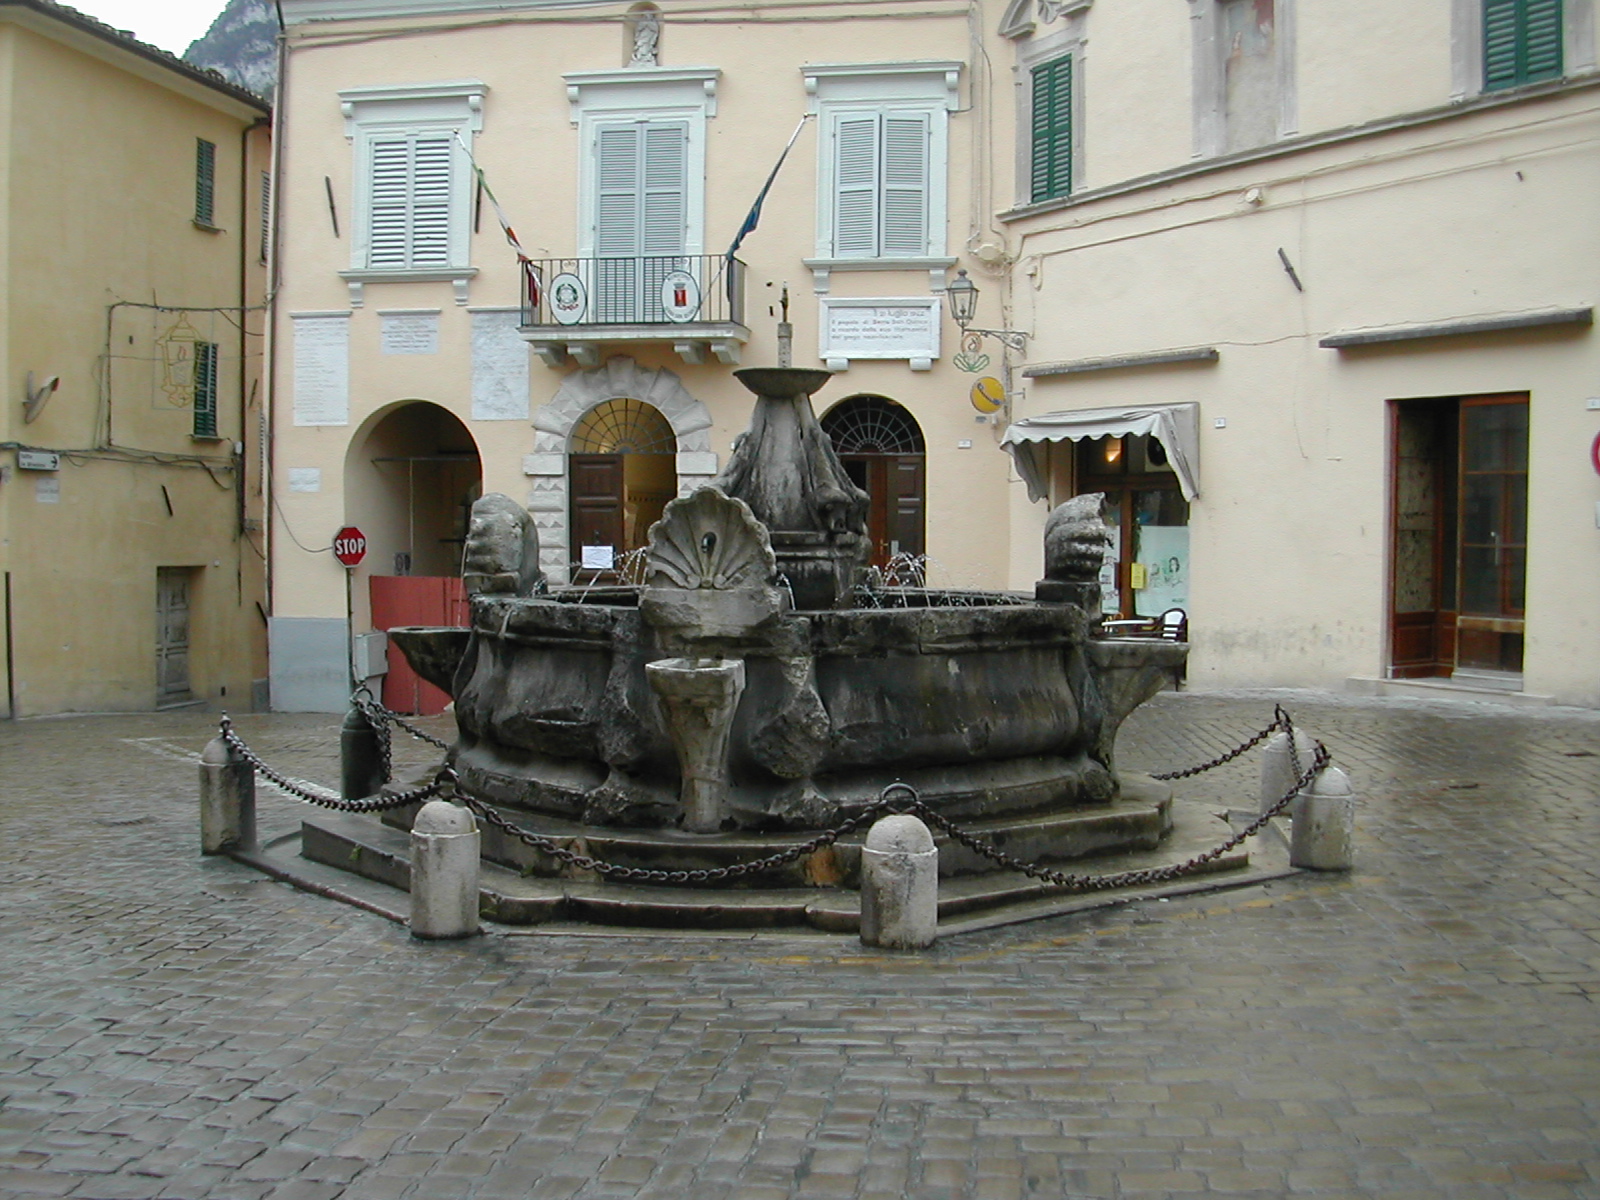 Fontana in P.zza della Libertà (fontana, pubblica) - Serra San Quirico (AN) 